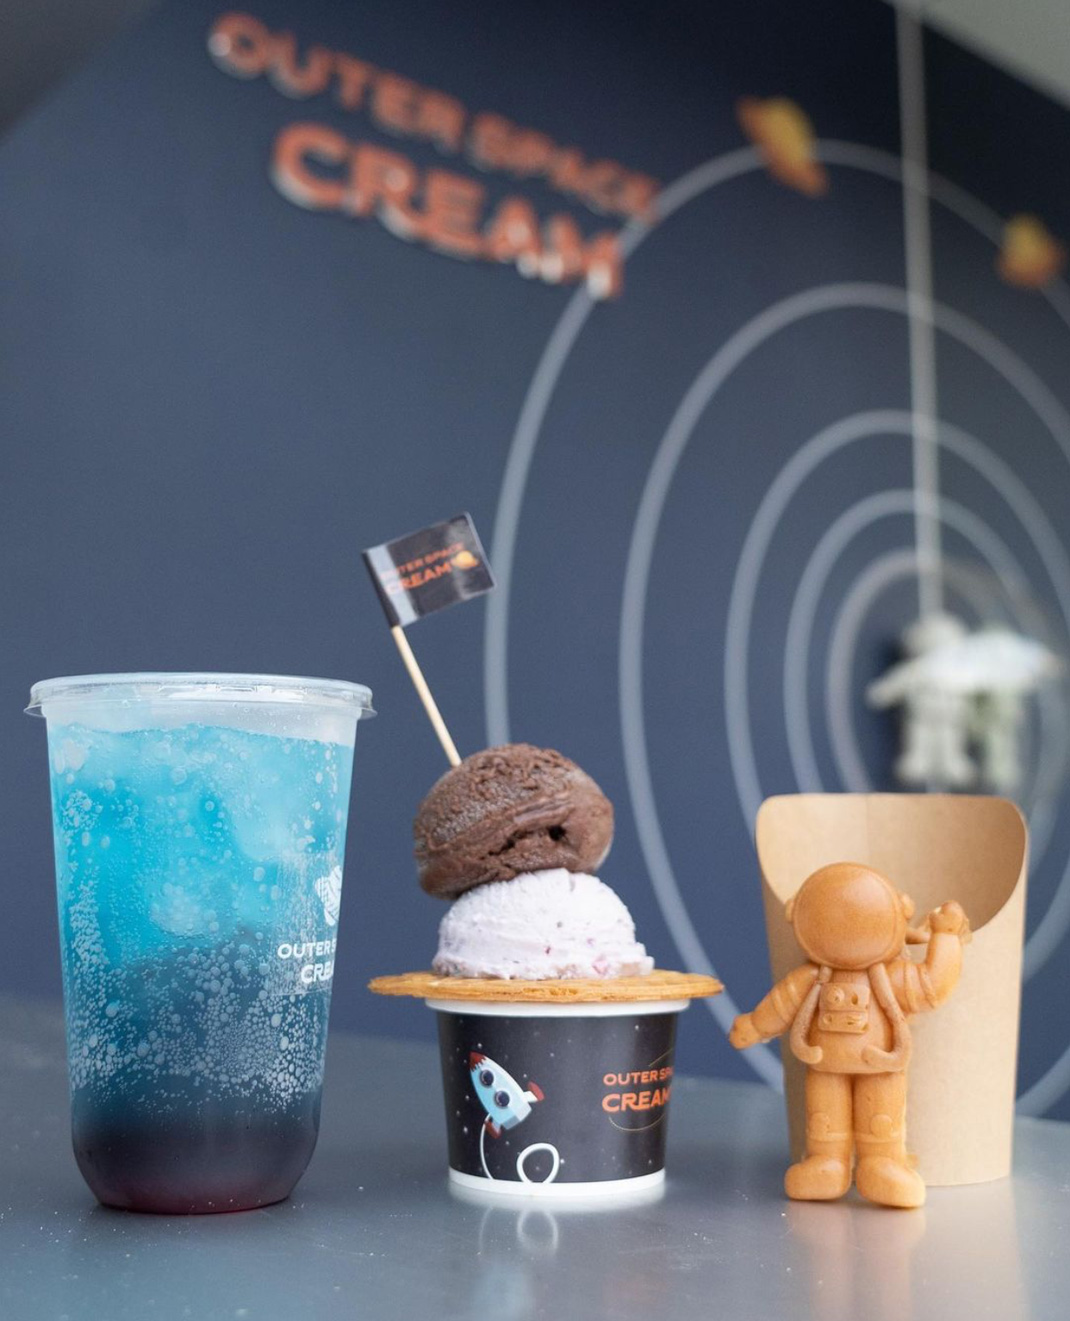 冰淇淋店OUTER SPACE CREAM 台湾 冰淇淋 袖珍店 蓝色 logo设计 vi设计 空间设计